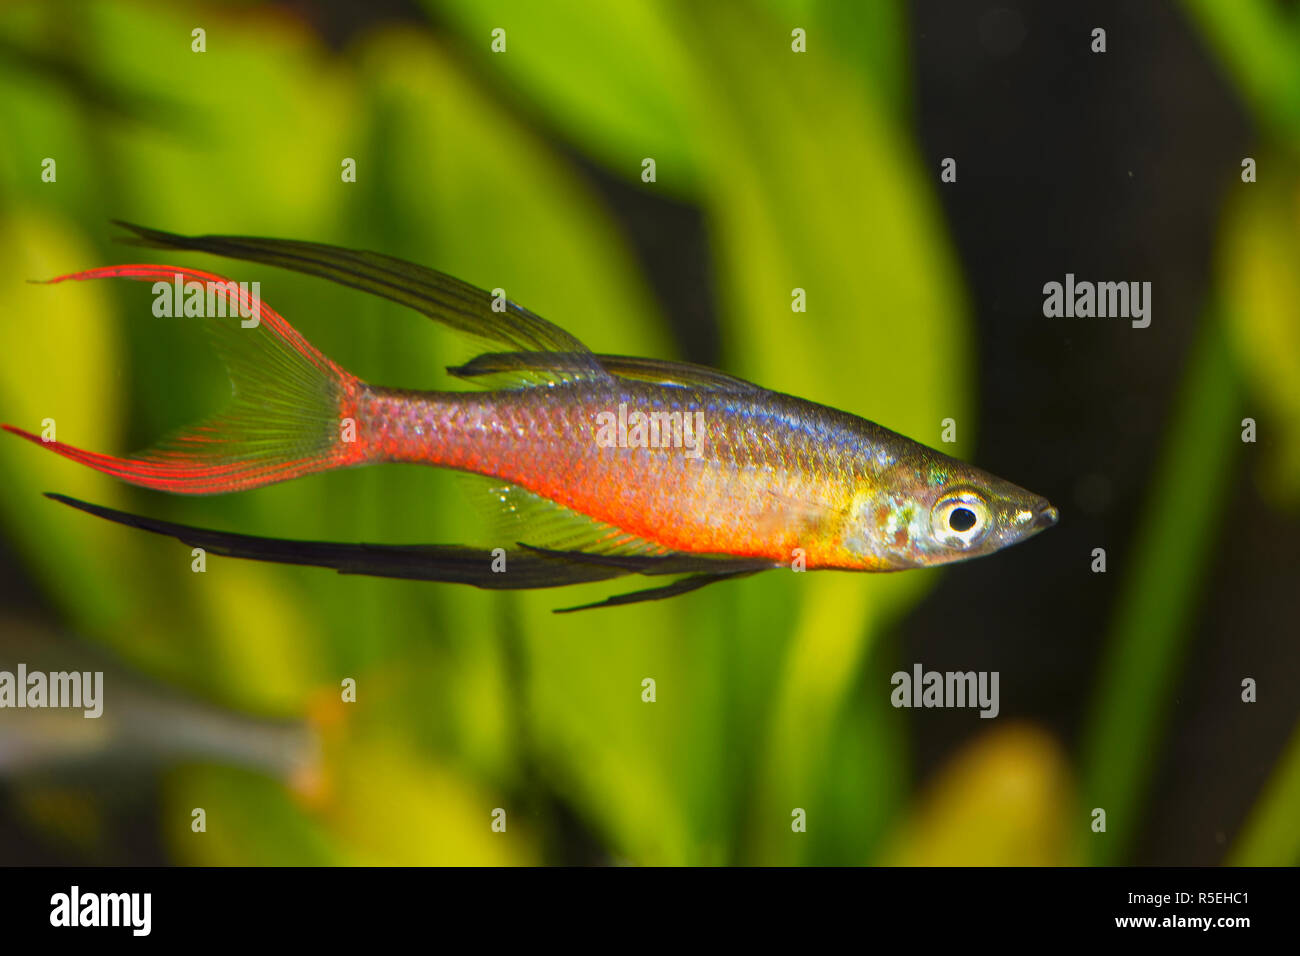 Portrait of aquarium fish - Threadfin rainbowfish (Iriatherina werneri) in a aquarium Stock Photo